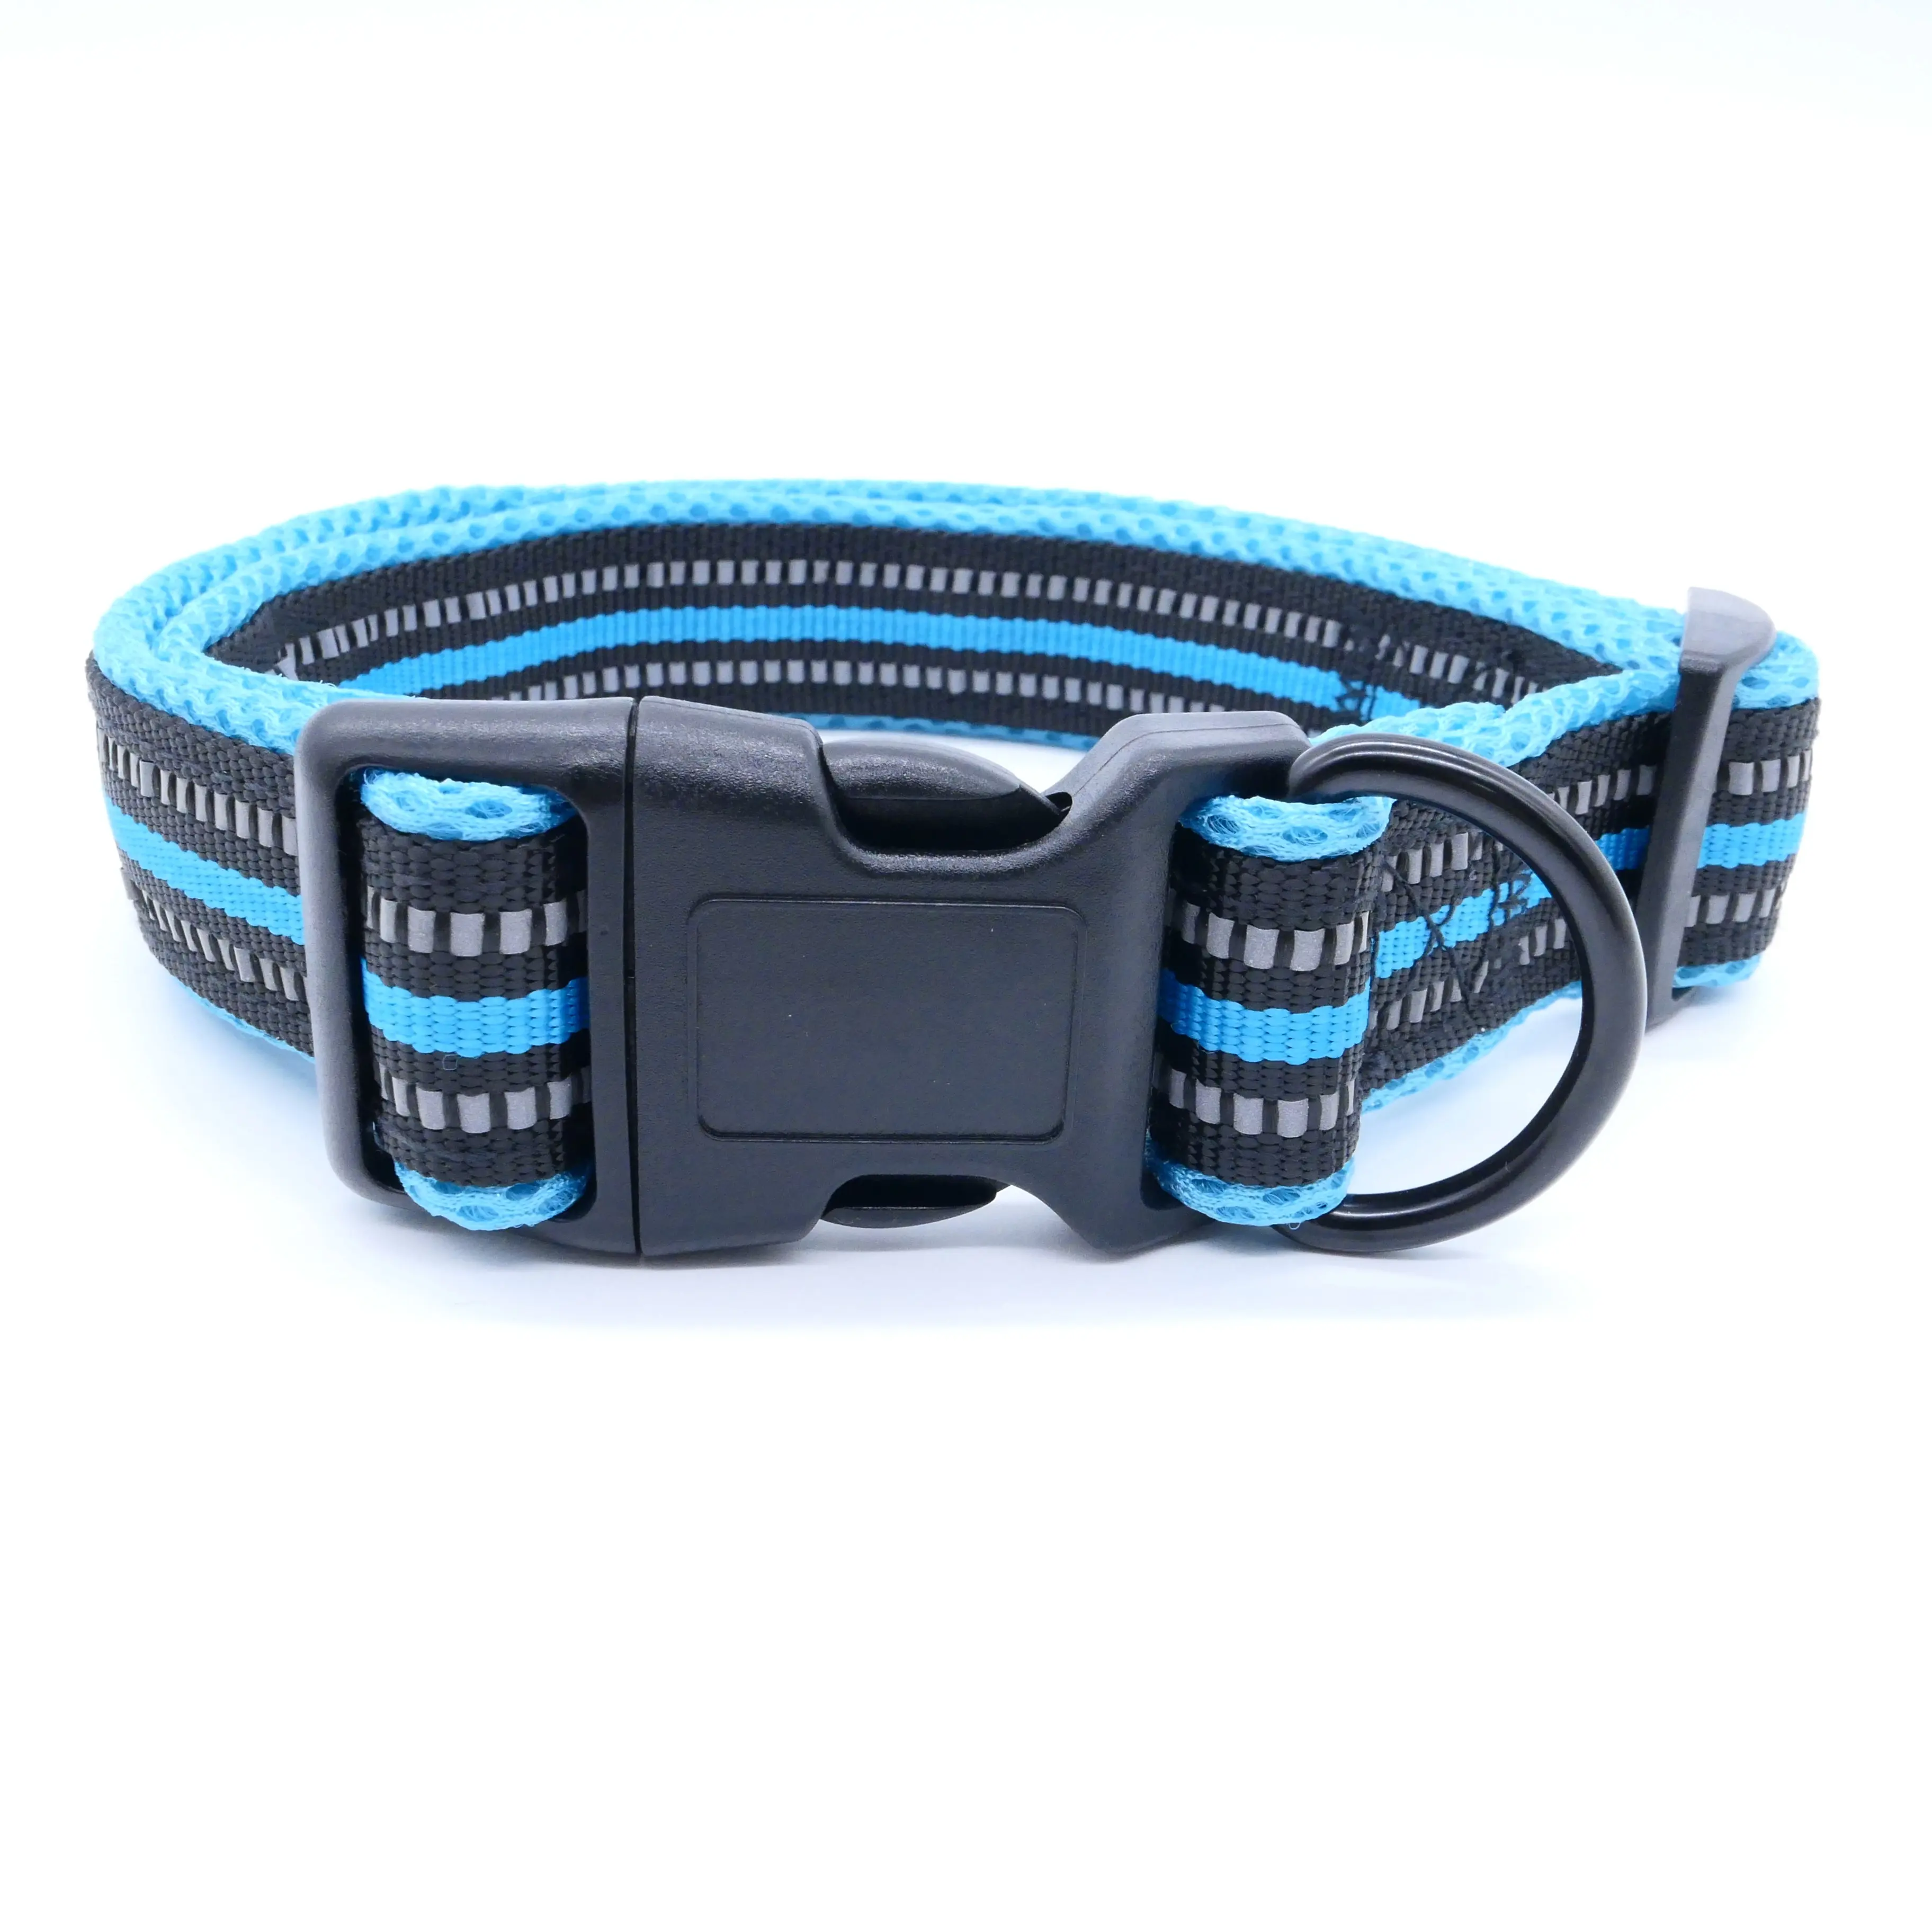 3/4" Soft reflective adjustable nylon webbing padded tactical training dog collar for large and medium sized dog